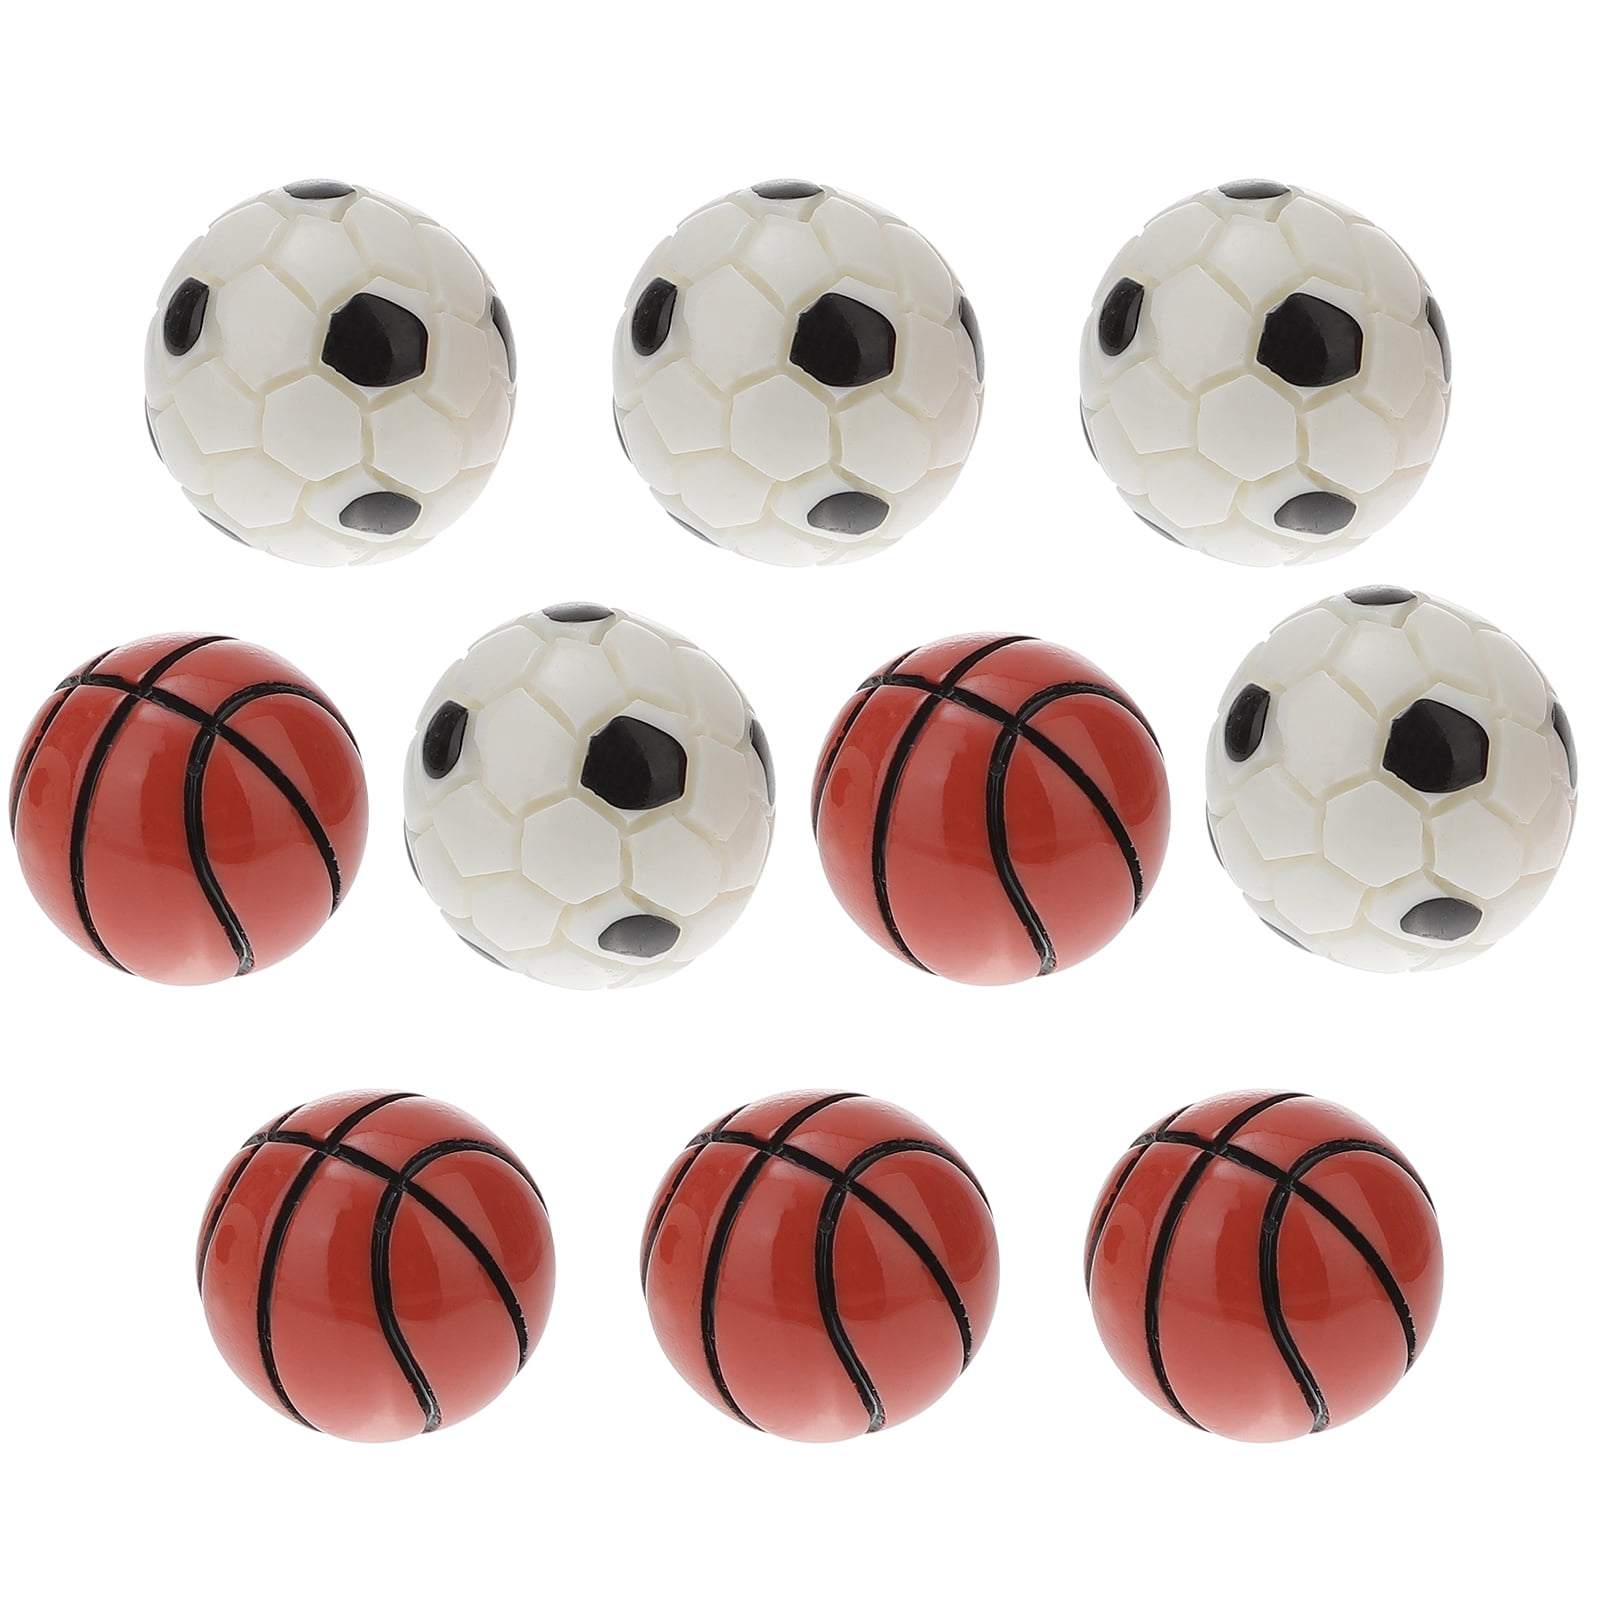 10Pcs Mini Soccer Basketball  Home Decor Mini Model for Kids 